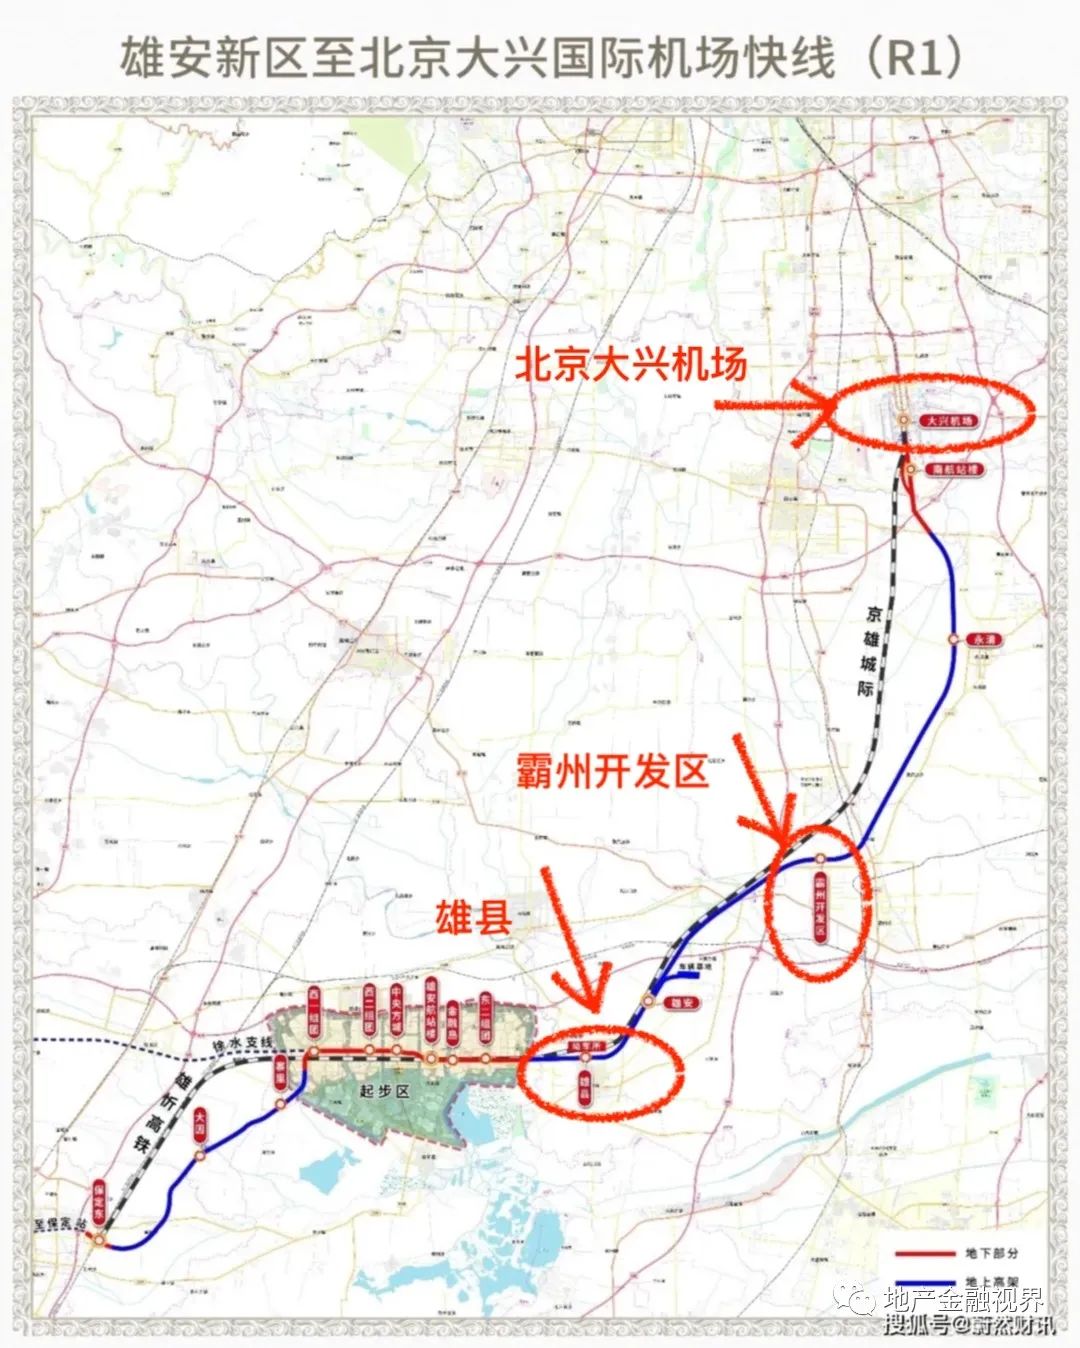 在京雄城际和r1线双轨双站的利好下,霸州很快构建起了半小时京雄生活